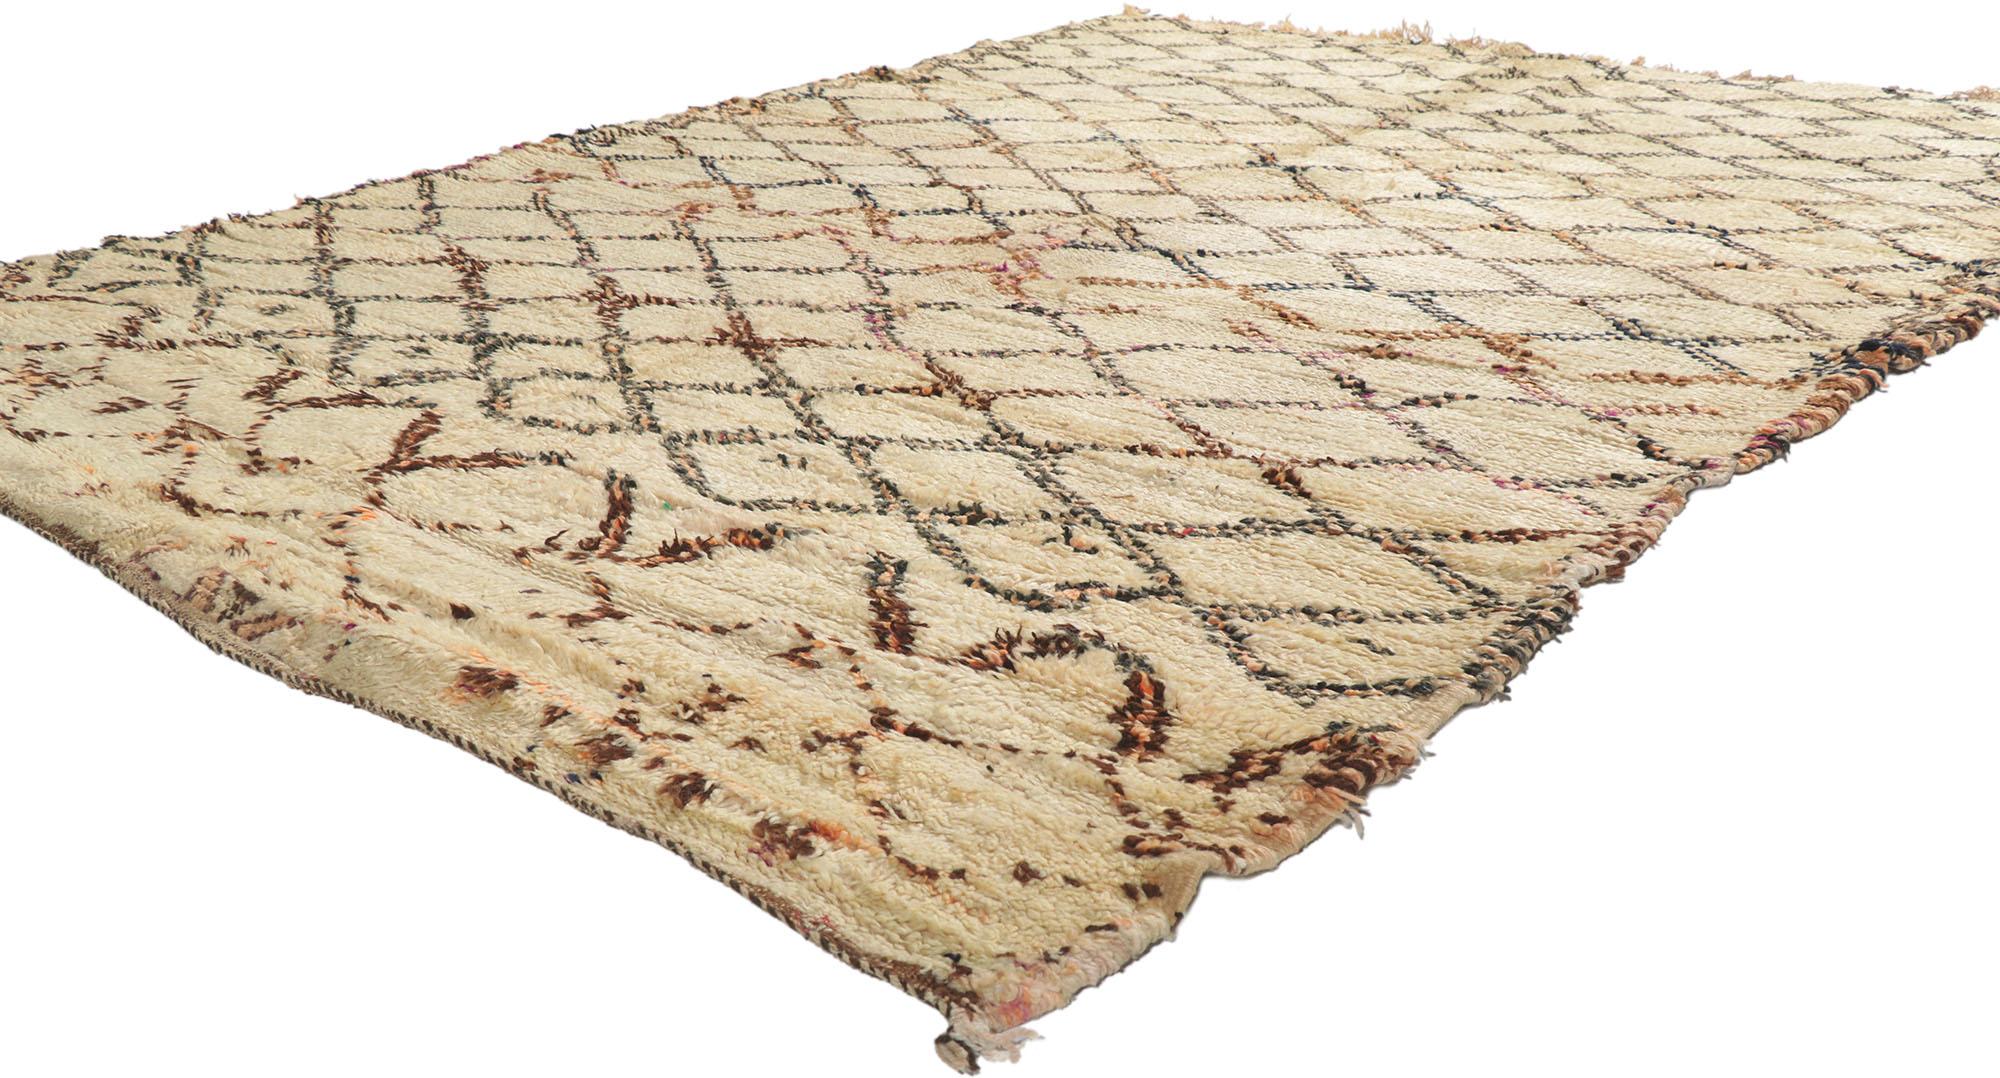 21352 Vieux tapis berbère marocain Beni Ourain 06'00 x 08'03. Avec sa simplicité, ses poils en peluche et son style tribal, ce tapis berbère vintage Beni Ourain en laine nouée à la main est une vision captivante de la beauté tissée. Il présente un